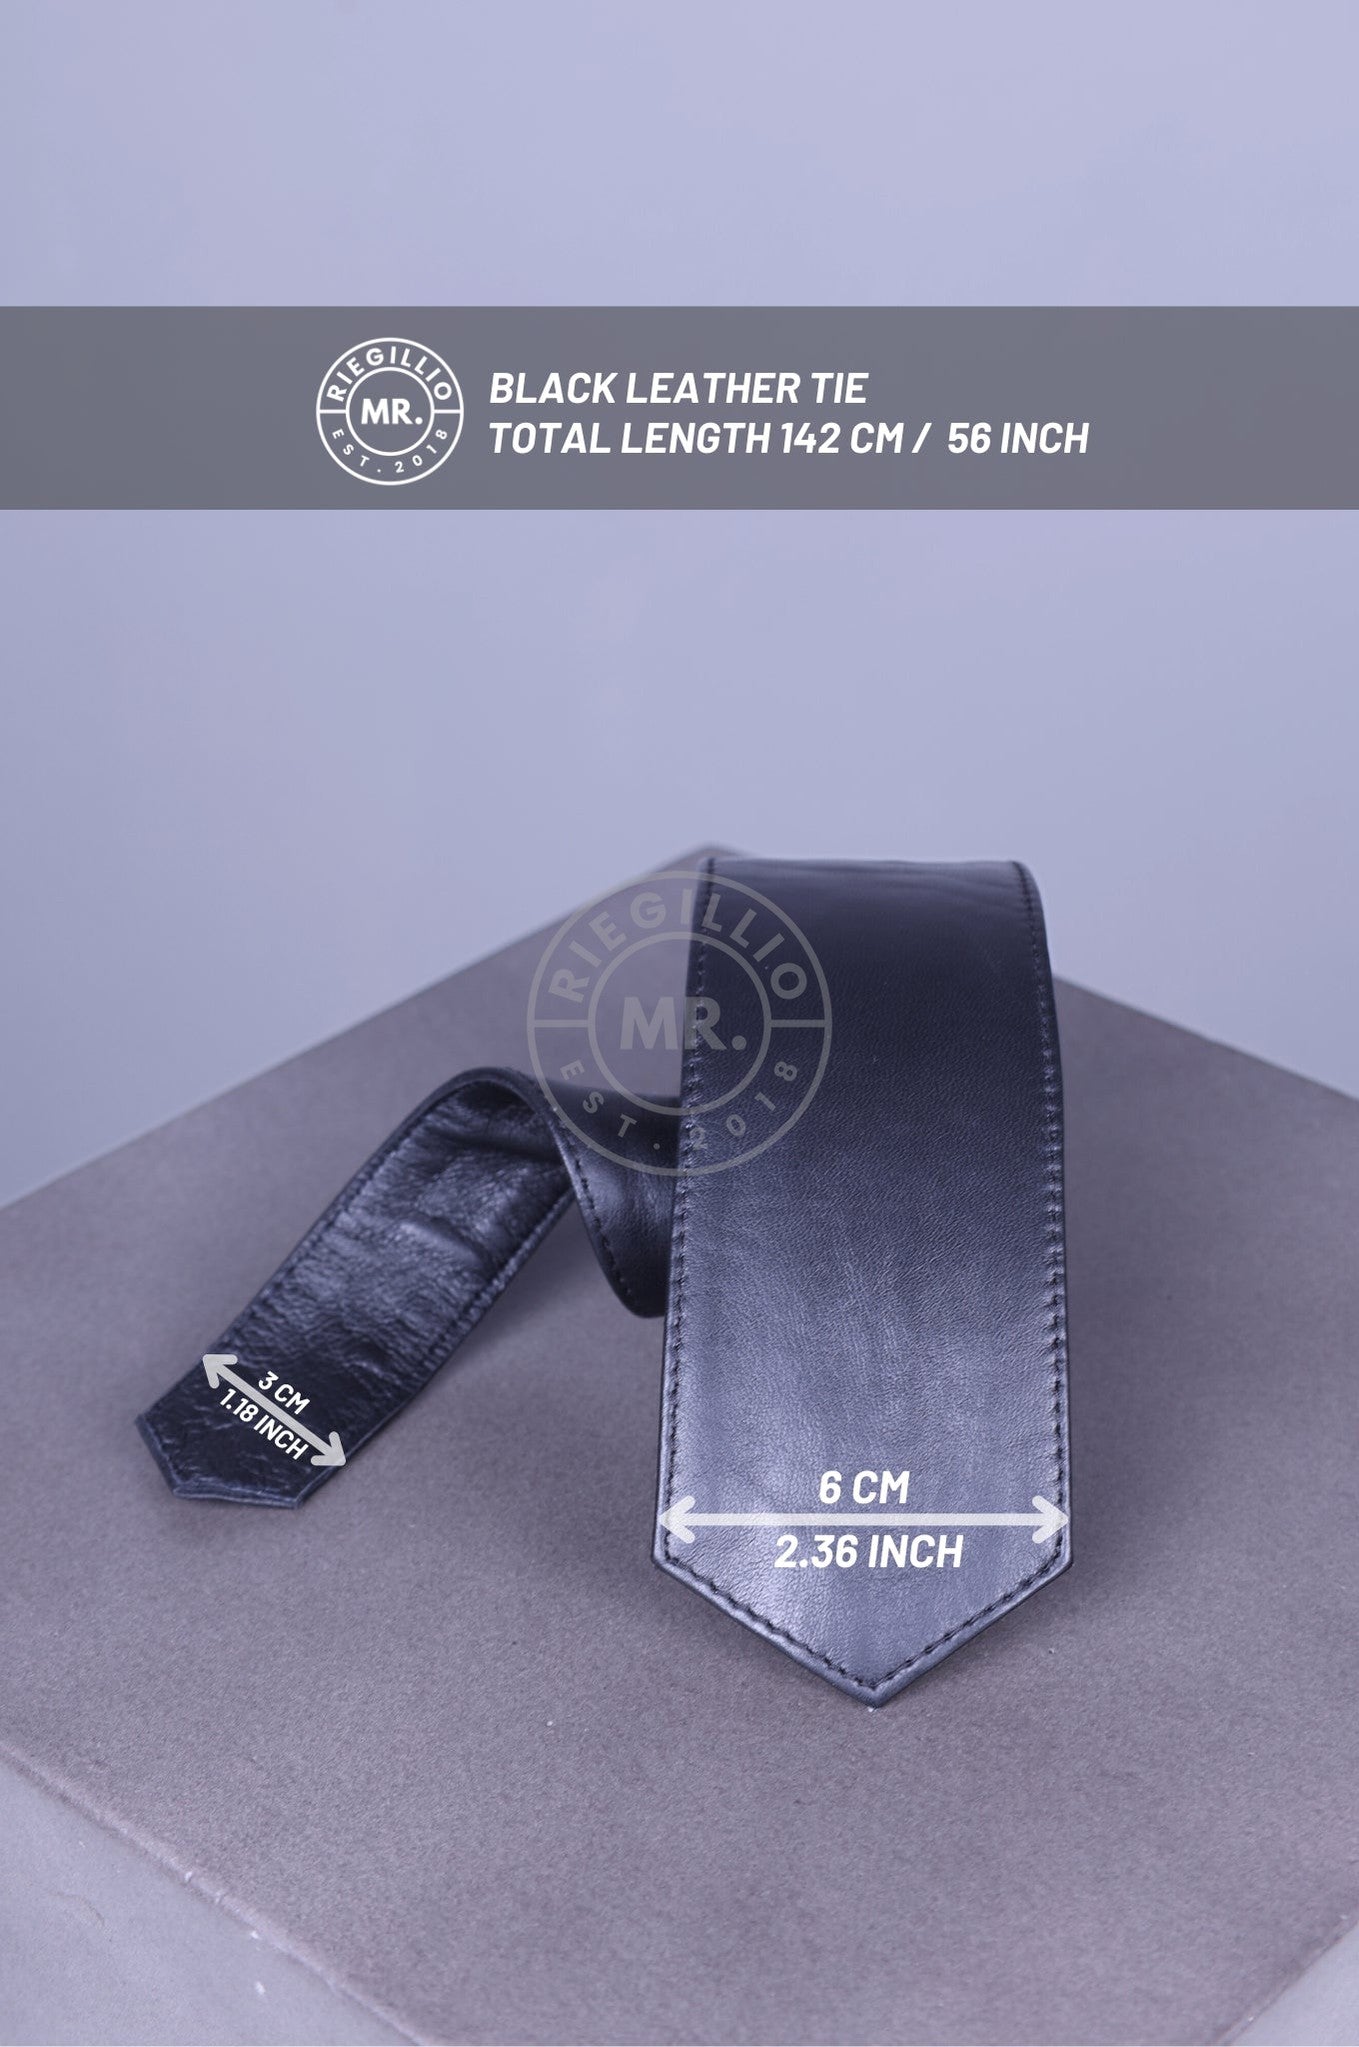 Black Leather Tie at MR. Riegillio